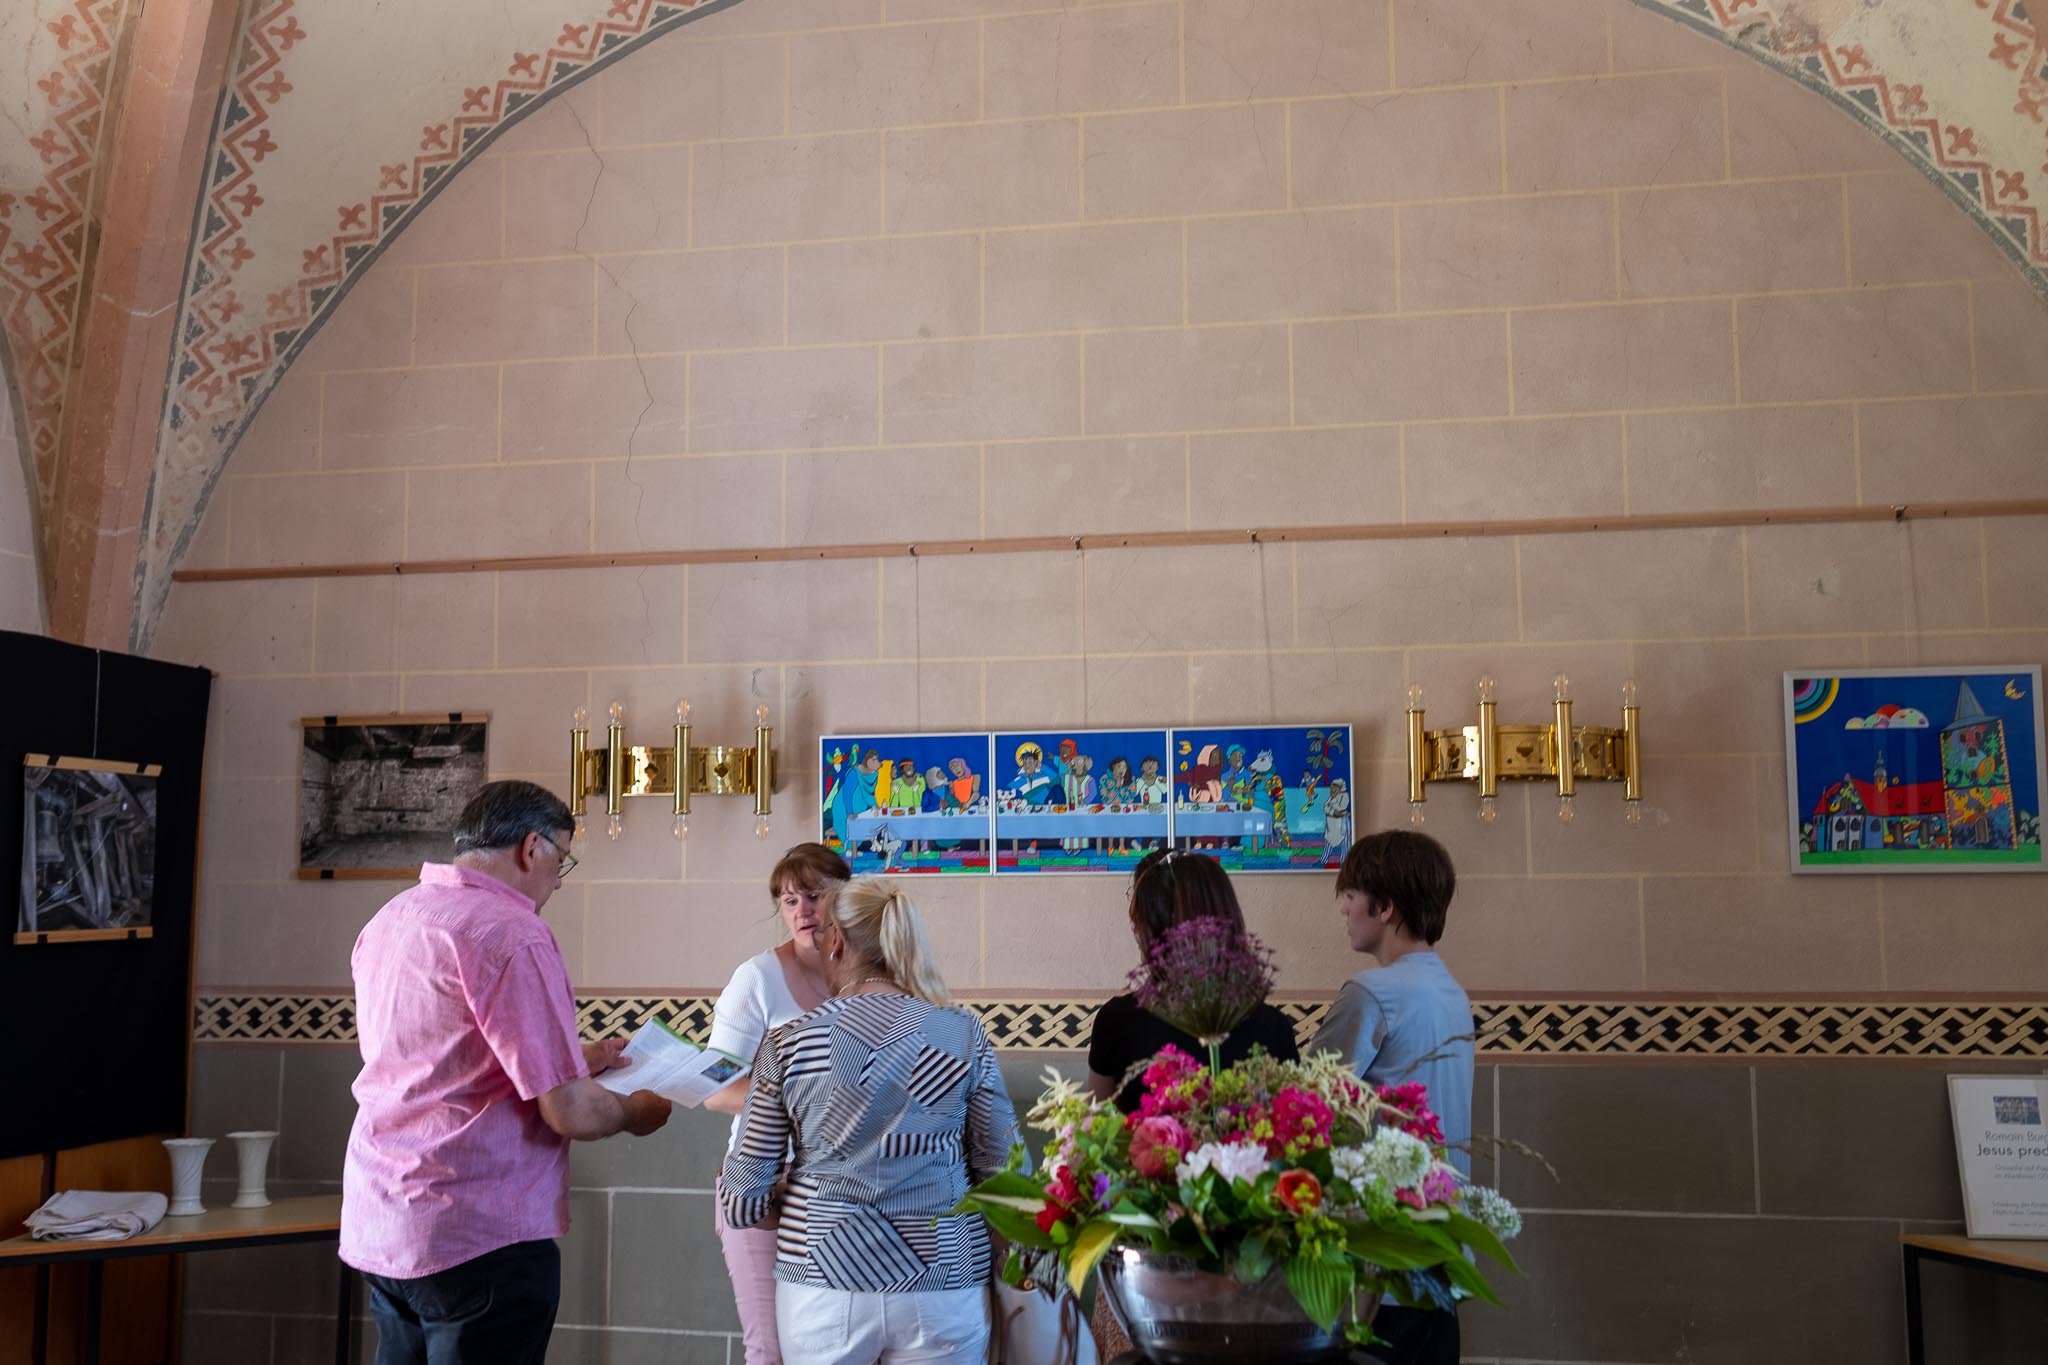 5 Personen stehen im Kreis im Innenraum einer Kirche. Eine männliche Person schaut dabei in ein aufgeschlagenes Buch. Im Vordergrund steht ein Blumenstrauß. im Hintergrund befinden sich einzelne Bilder und Leuchten.